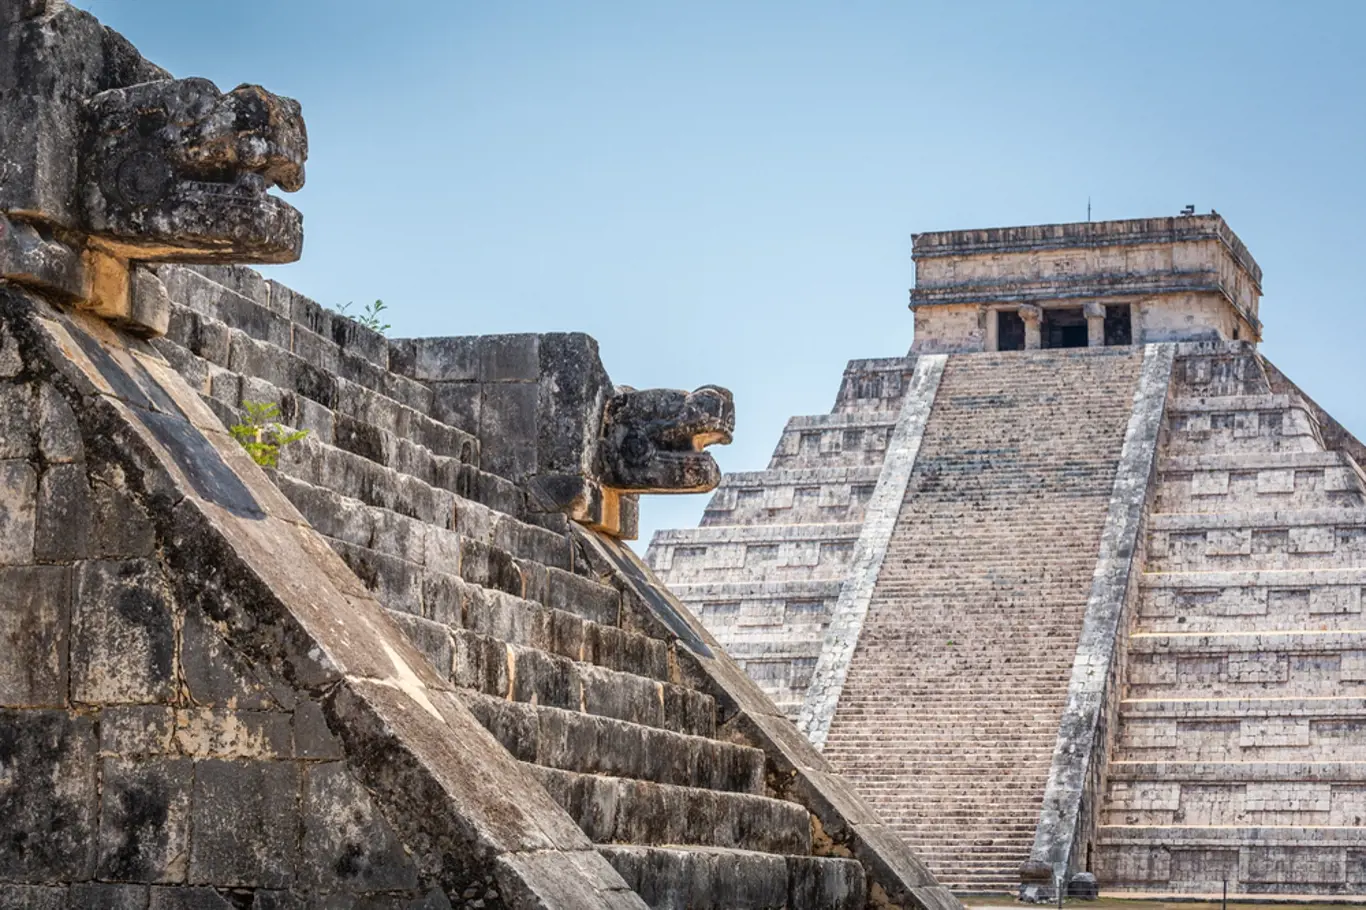 Co objevili vědci uvnitř Kukulkánovy pyramidy?